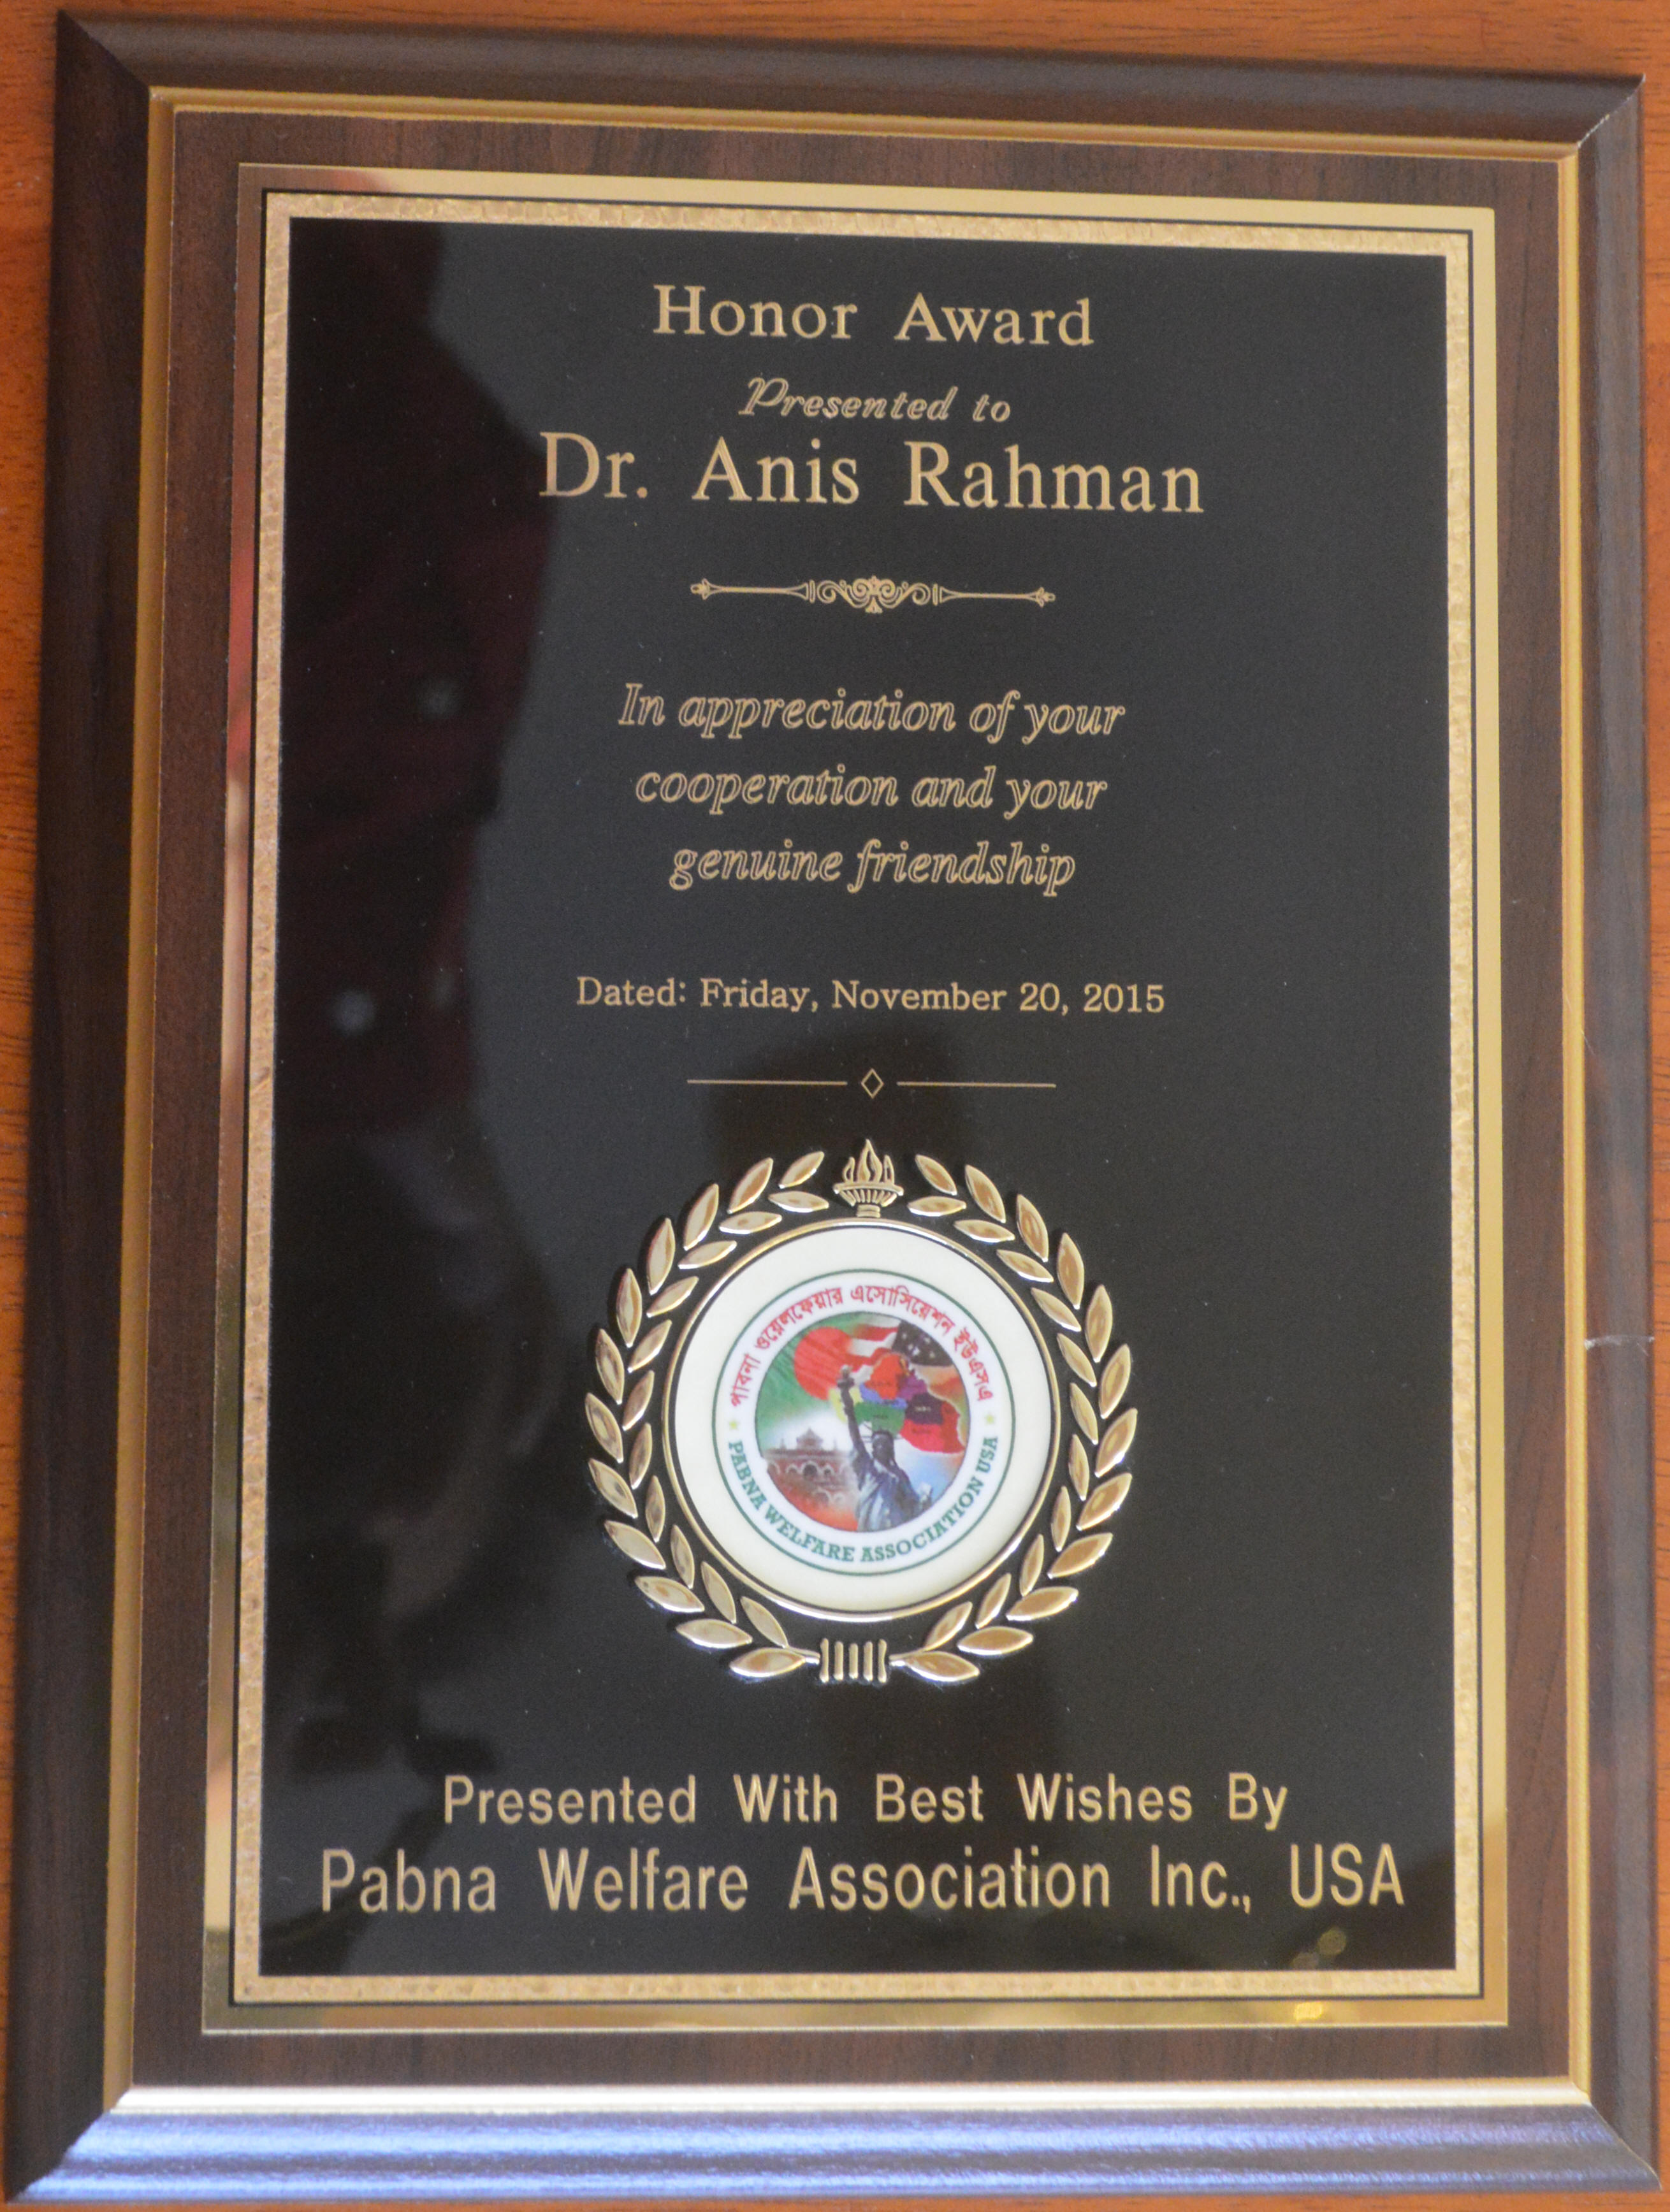 Honor Award from Pabna Welfare Association, NY